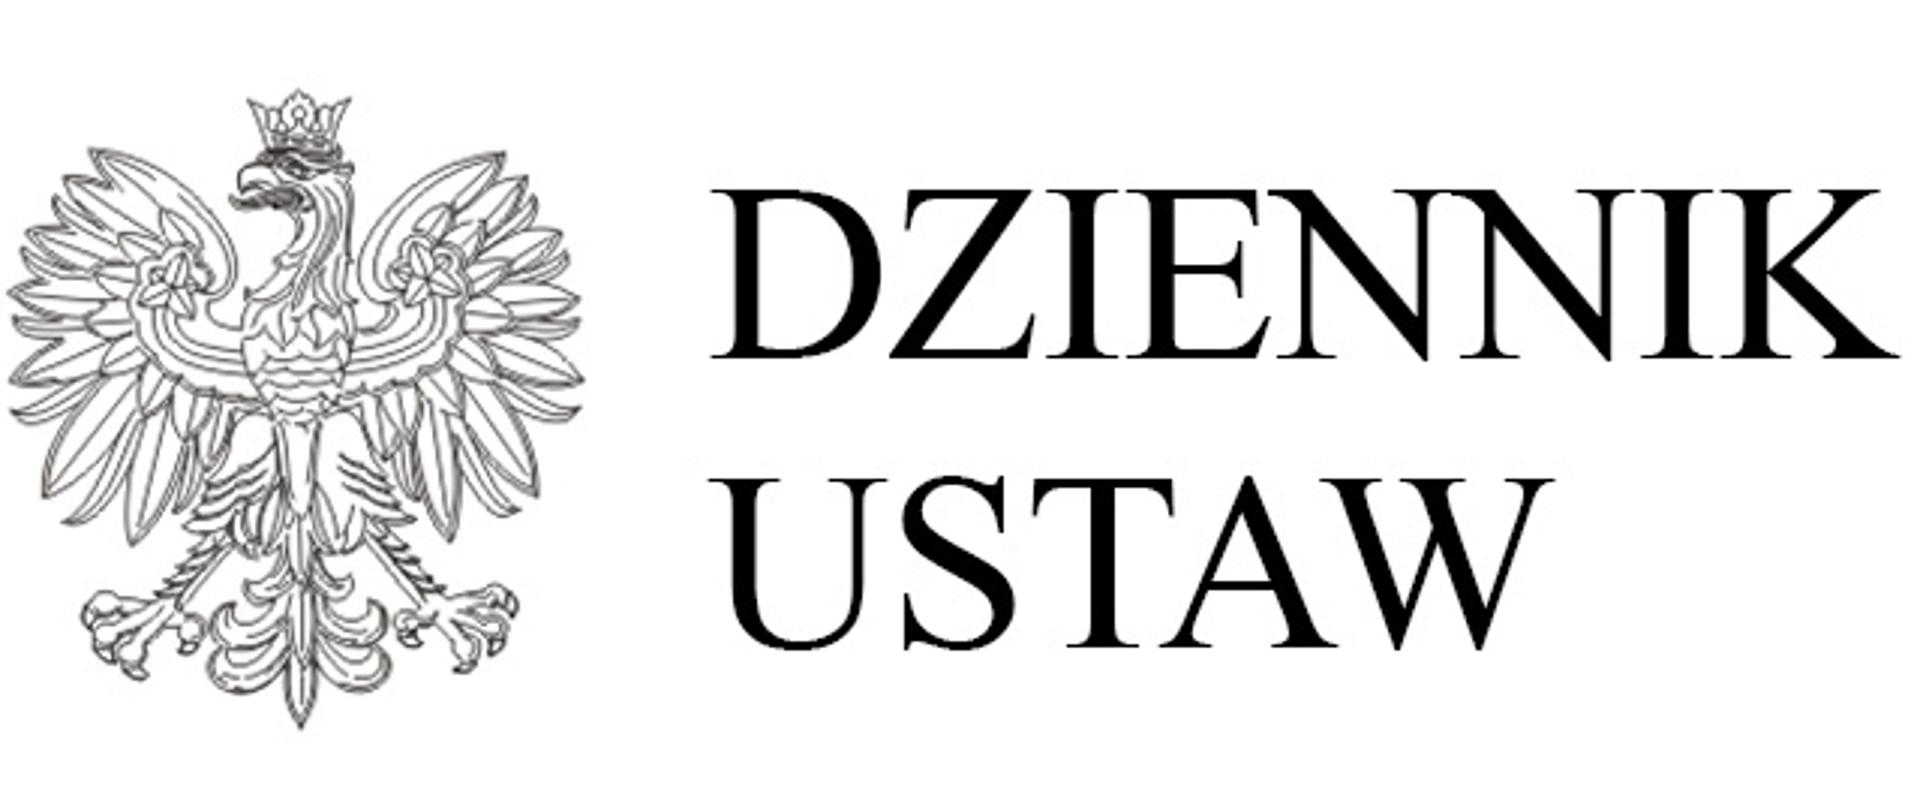 Napis dziennik ustaw z wizerunkiem orła z godła Polski obok napisu 